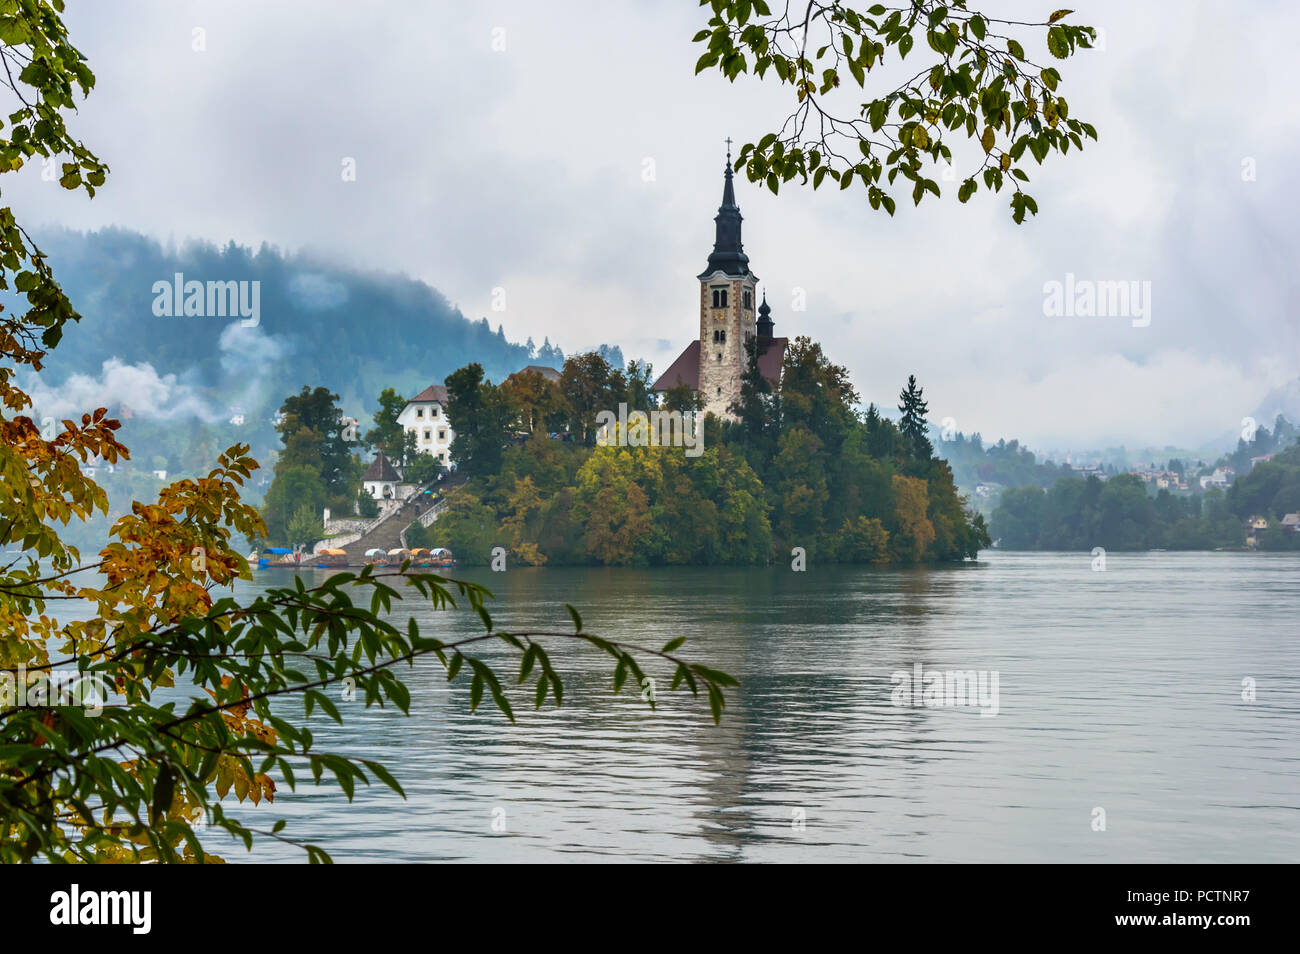 Le lac de Bled en automne, la Slovénie. Lac de montagne avec les petits États insulaires et de l'église encadrée avec les feuilles des arbres. Banque D'Images